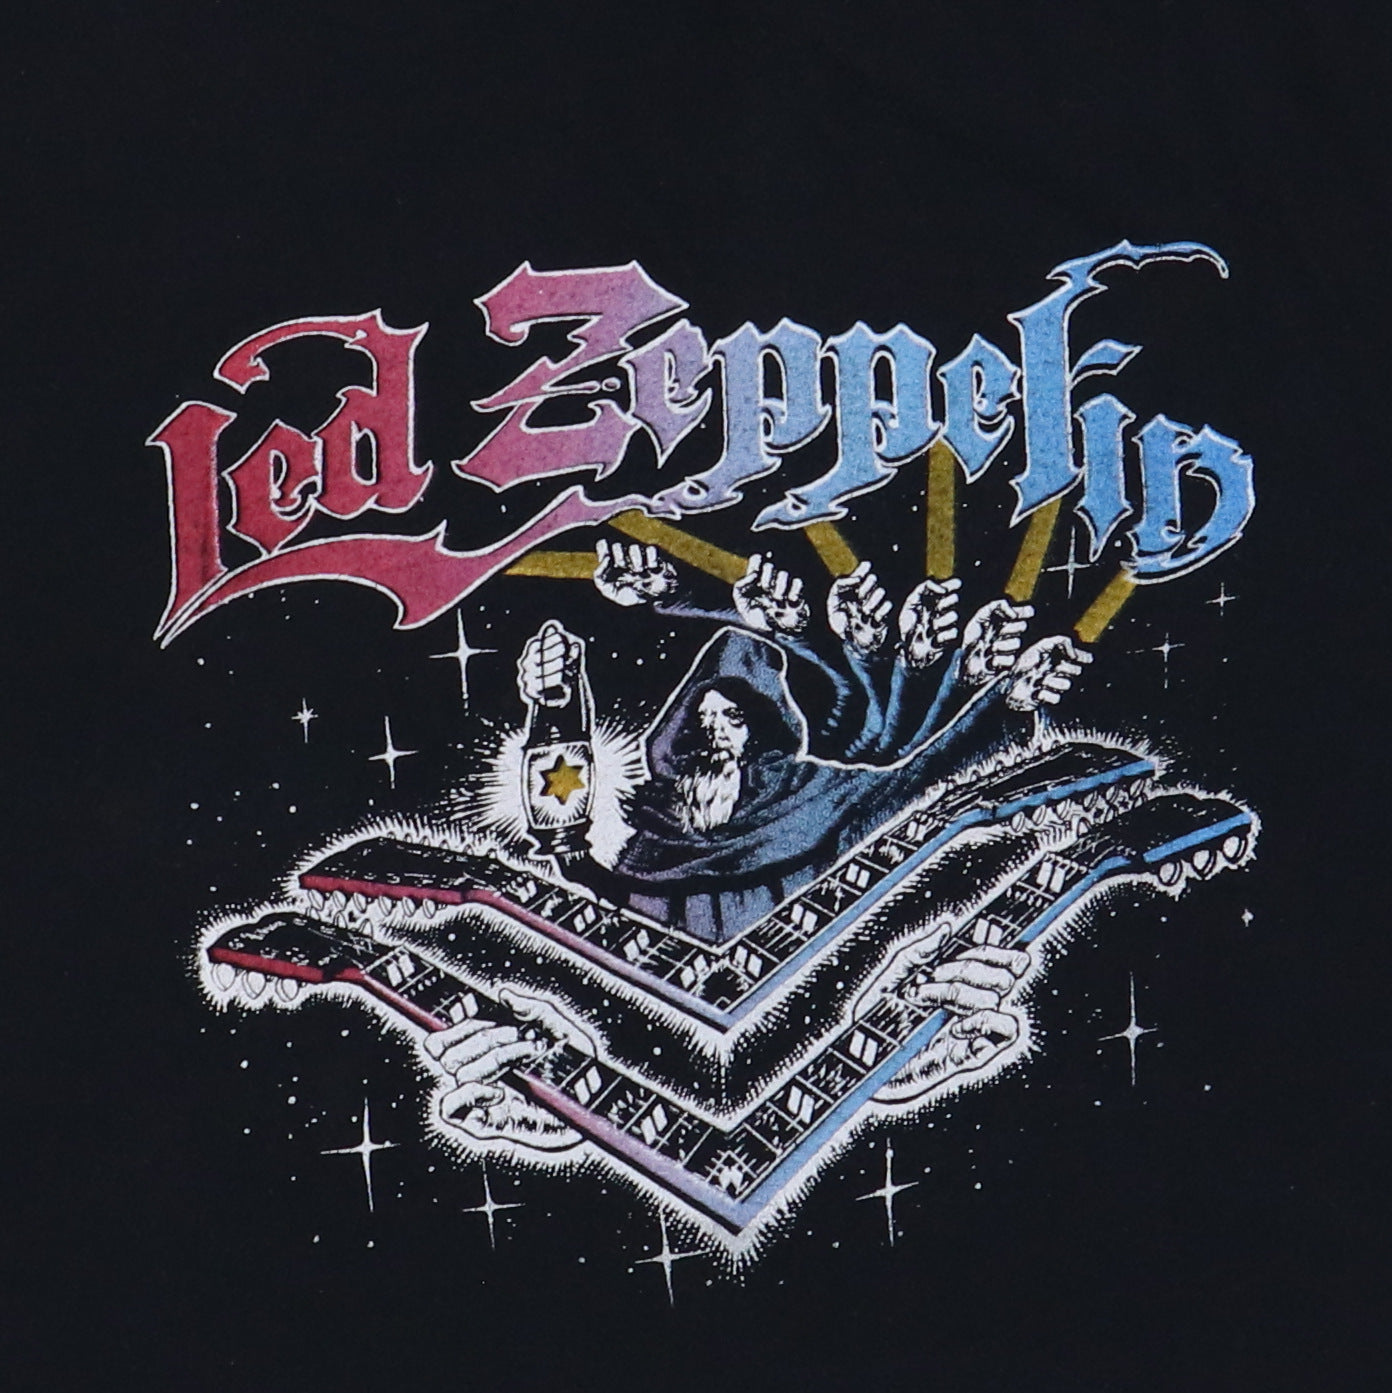 1970s Led Zeppelin Shirt